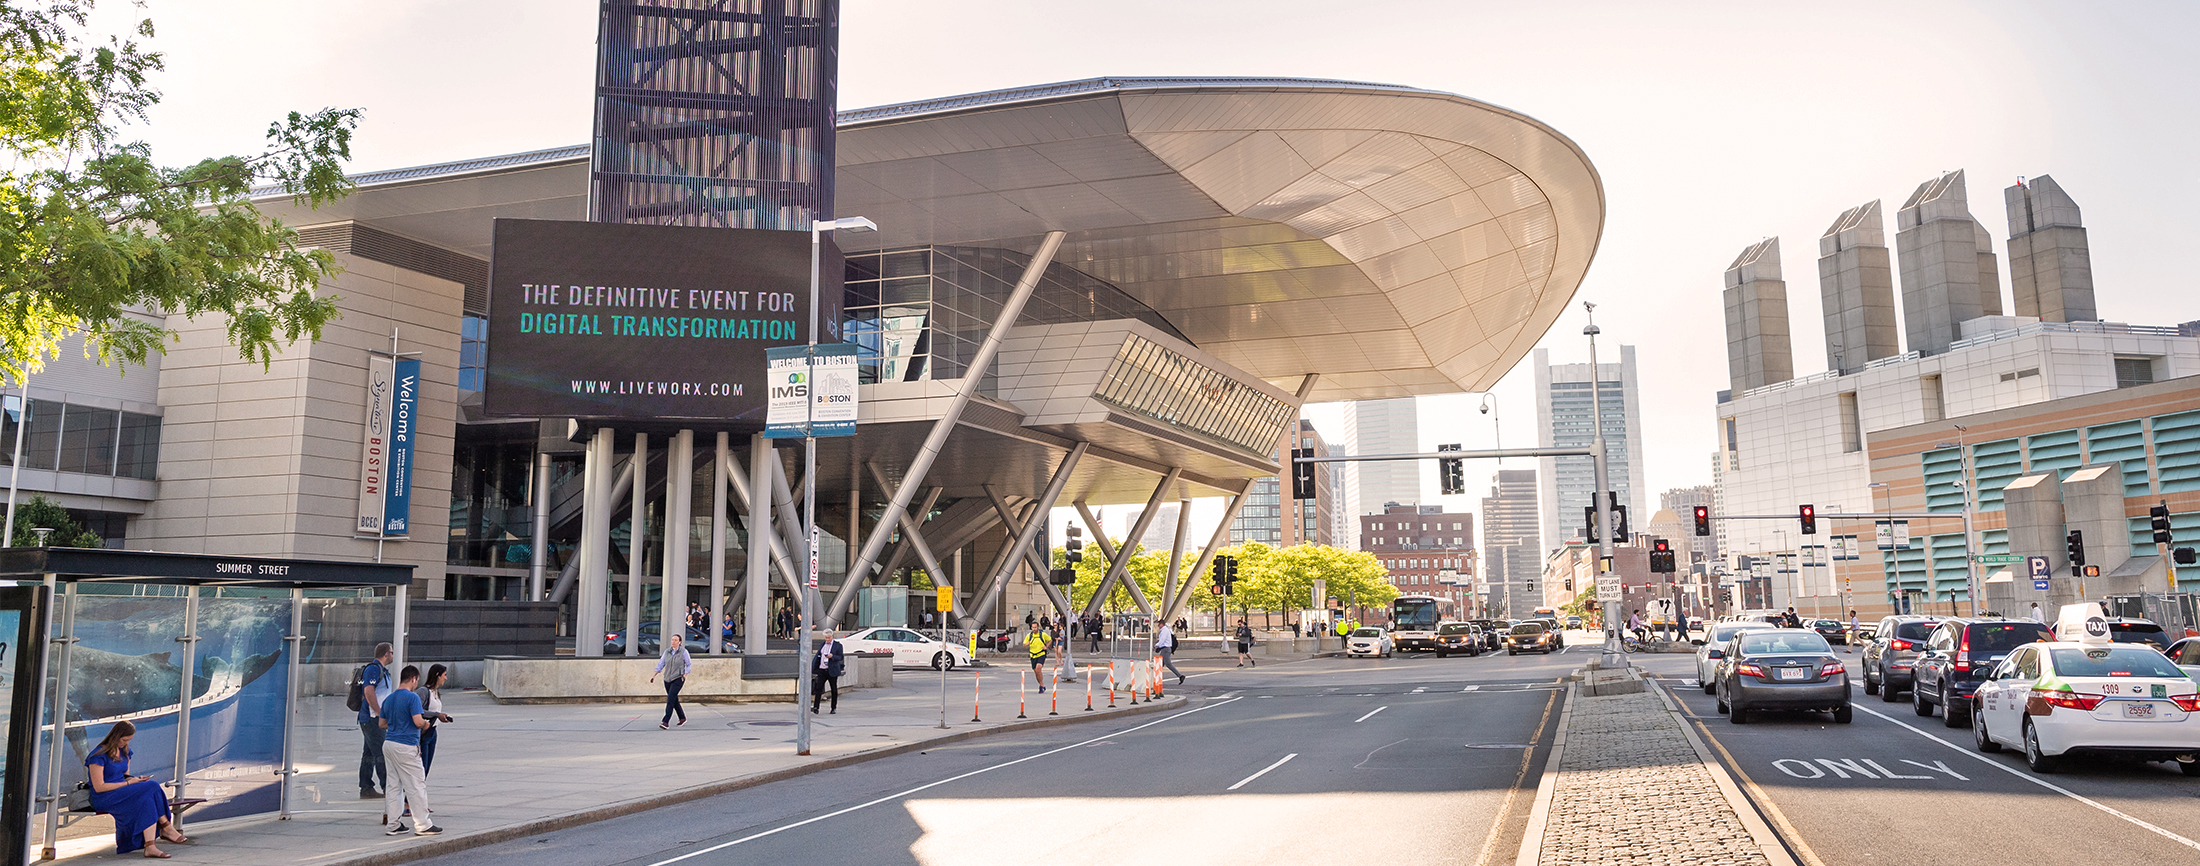 Boston Convention & Exhibition Center BCEC exterior